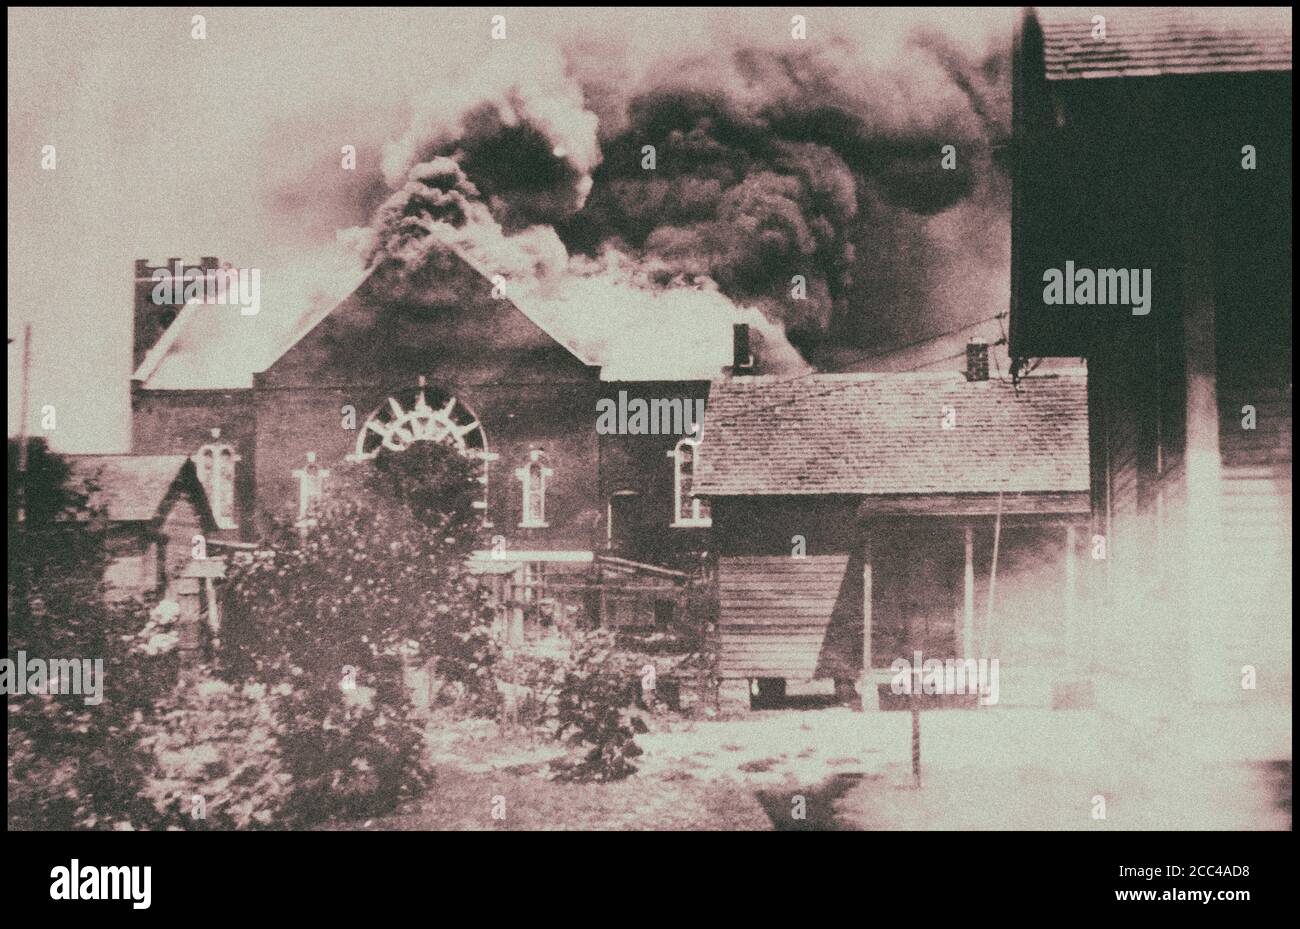 Quema de la iglesia donde se almacenaron municiones durante los disturbios de la raza, Tulsa, Oklahoma. EE.UU. 1 de junio de 1921 Foto de stock